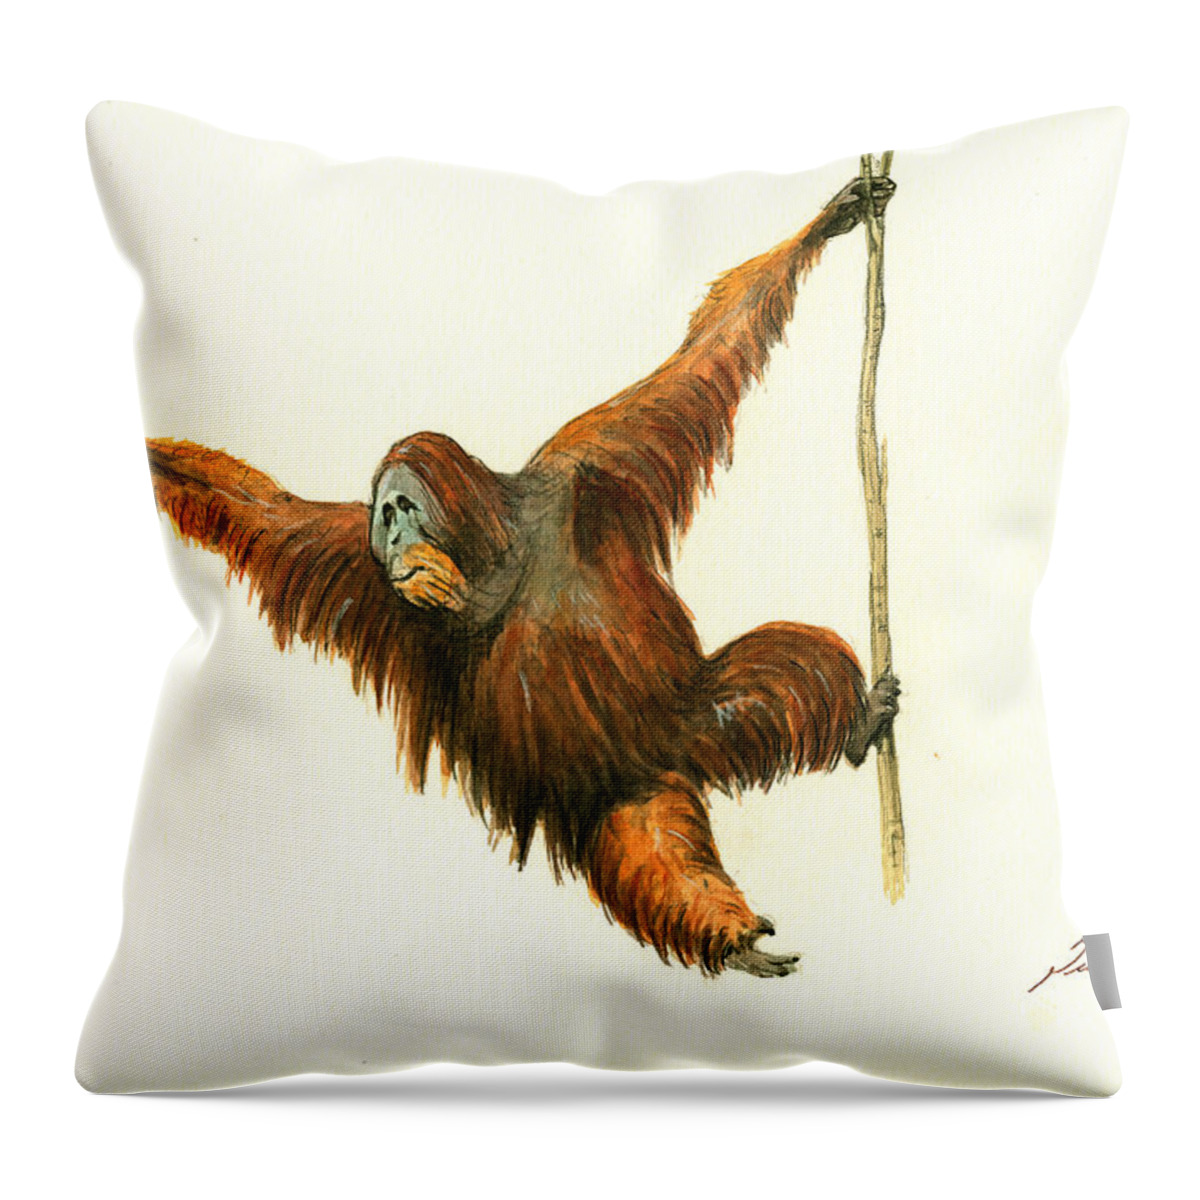 Orangutan Animal Throw Pillow featuring the painting Orangutan by Juan Bosco